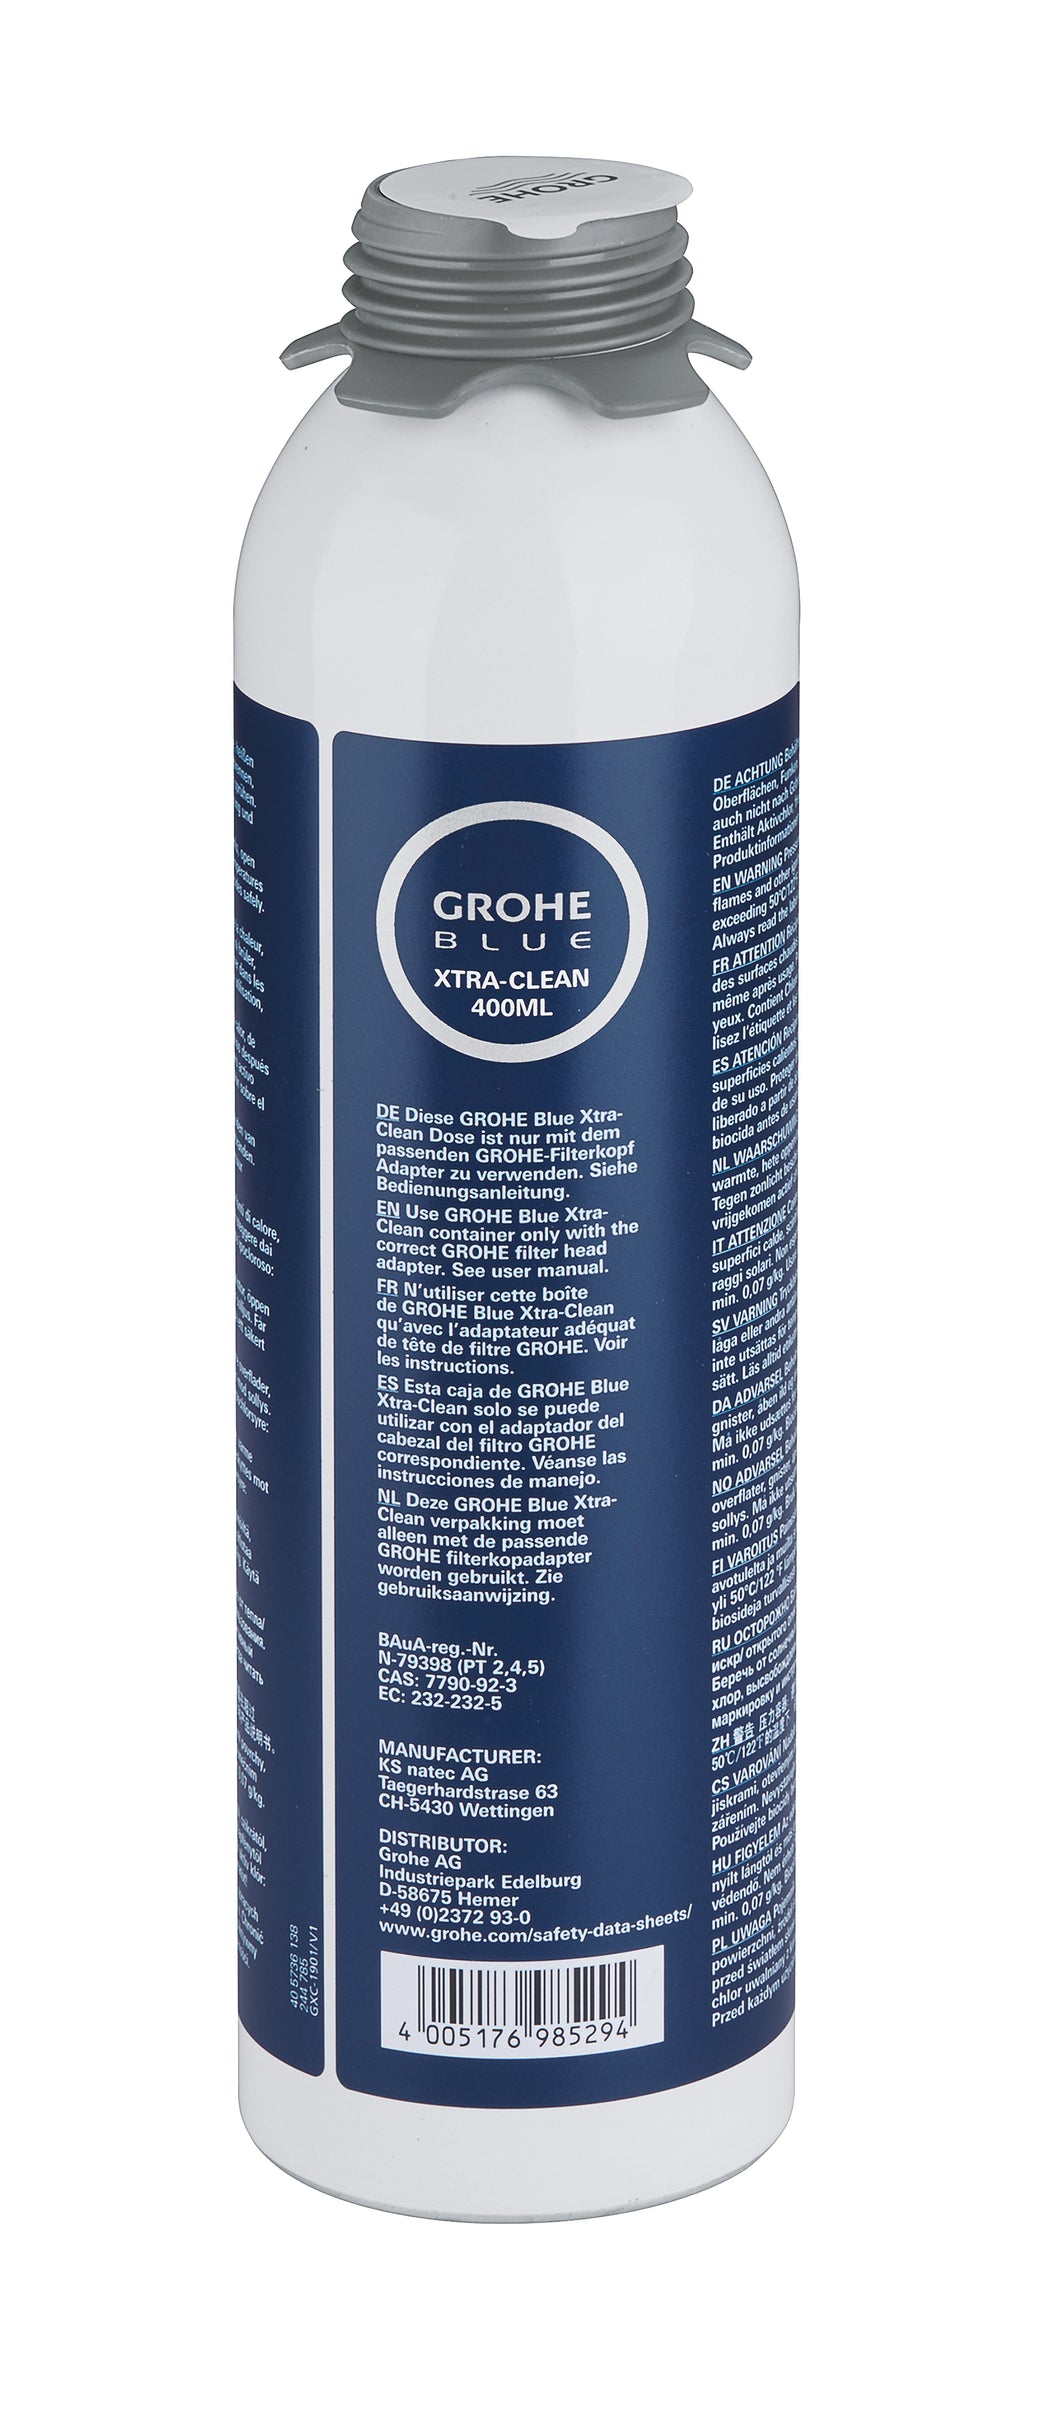 GROHE Blue Reinigungskartusche – Hygiene garantiert